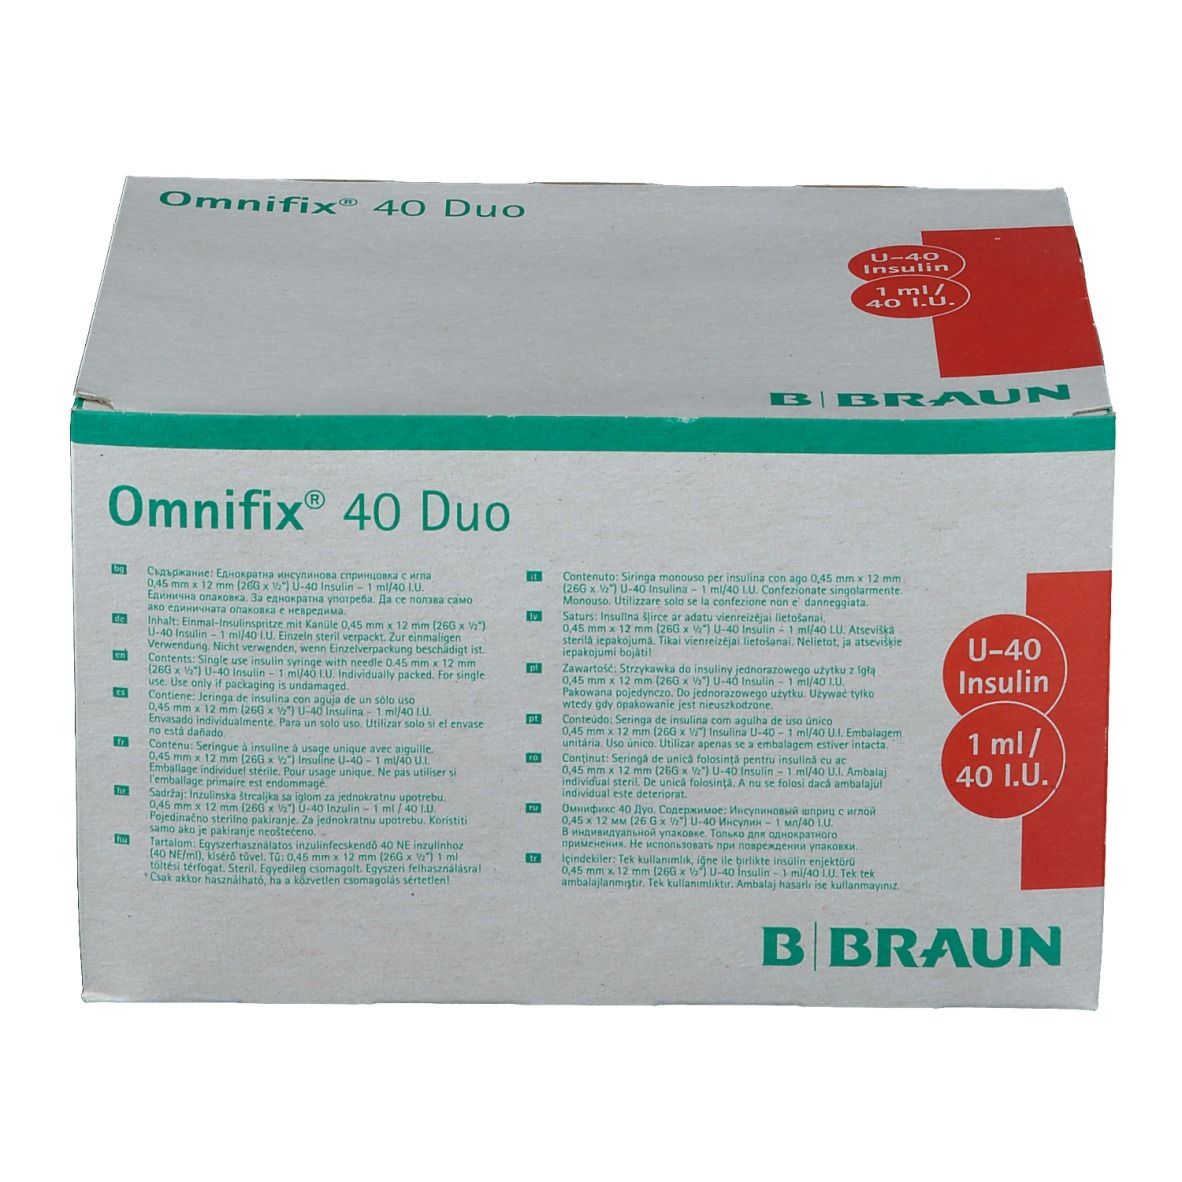 Omnifix® 40 Duo